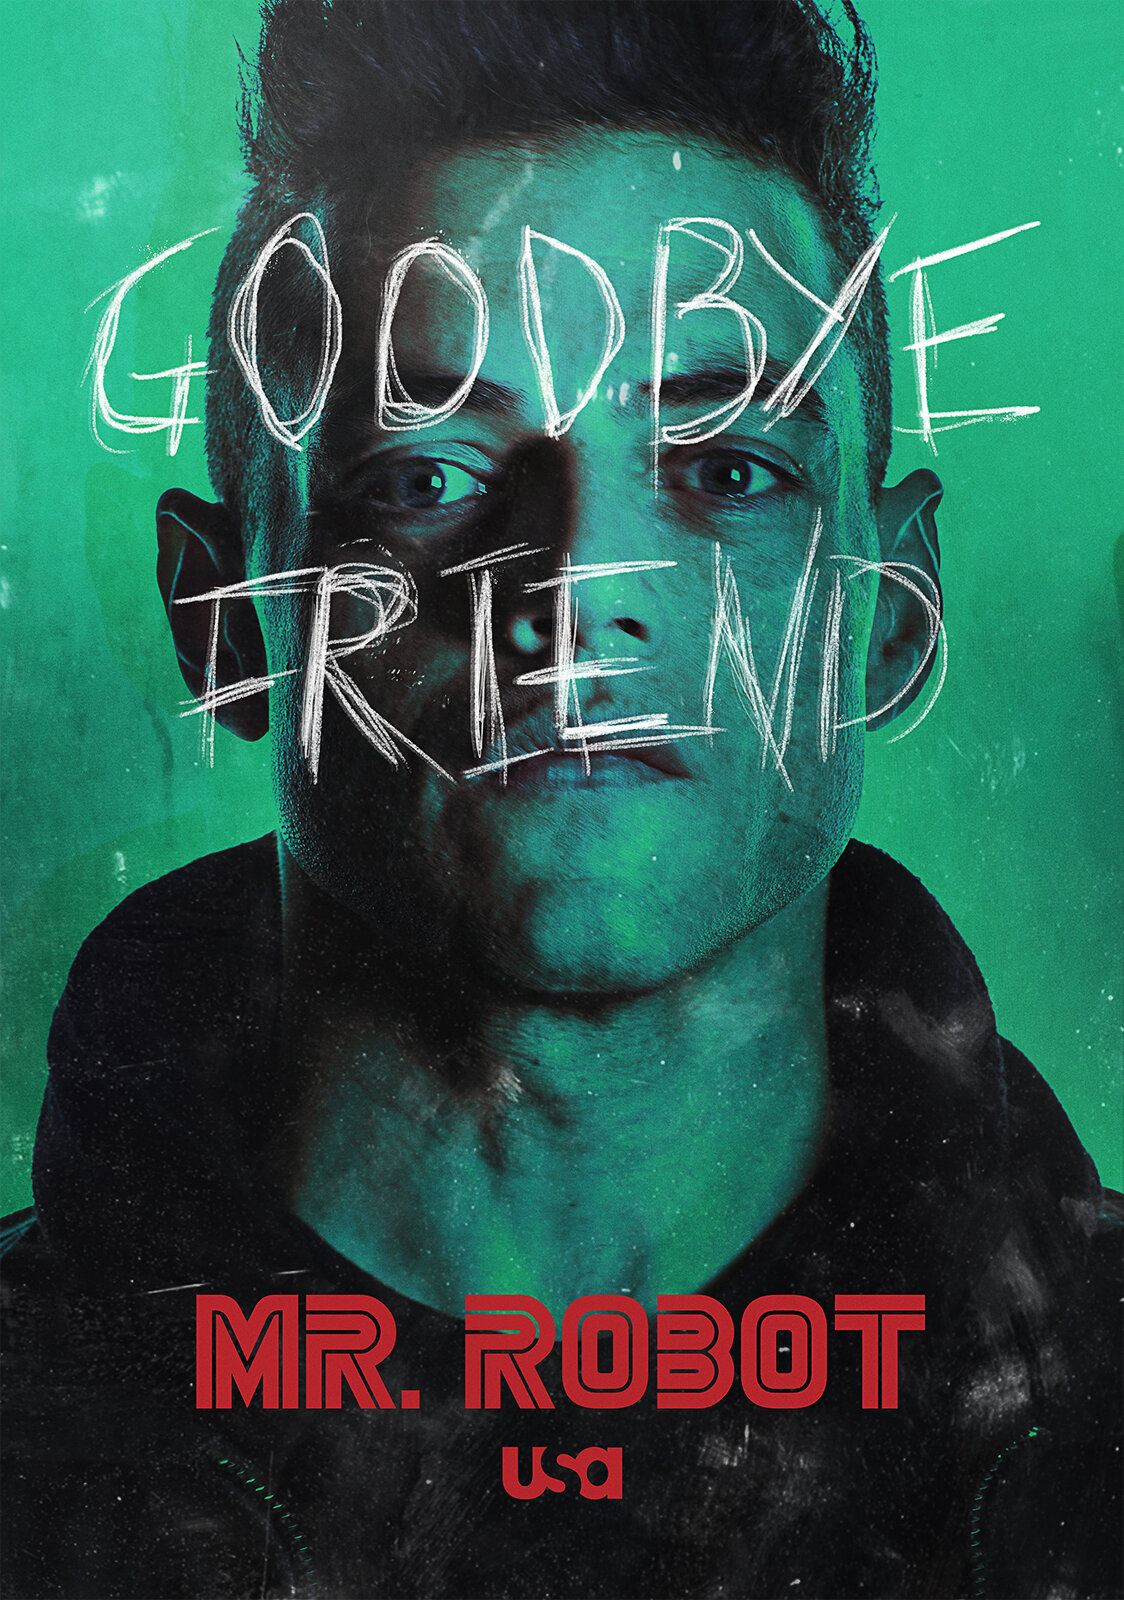 Season 4 of Mr. Robot Poster OC : r/MrRobot